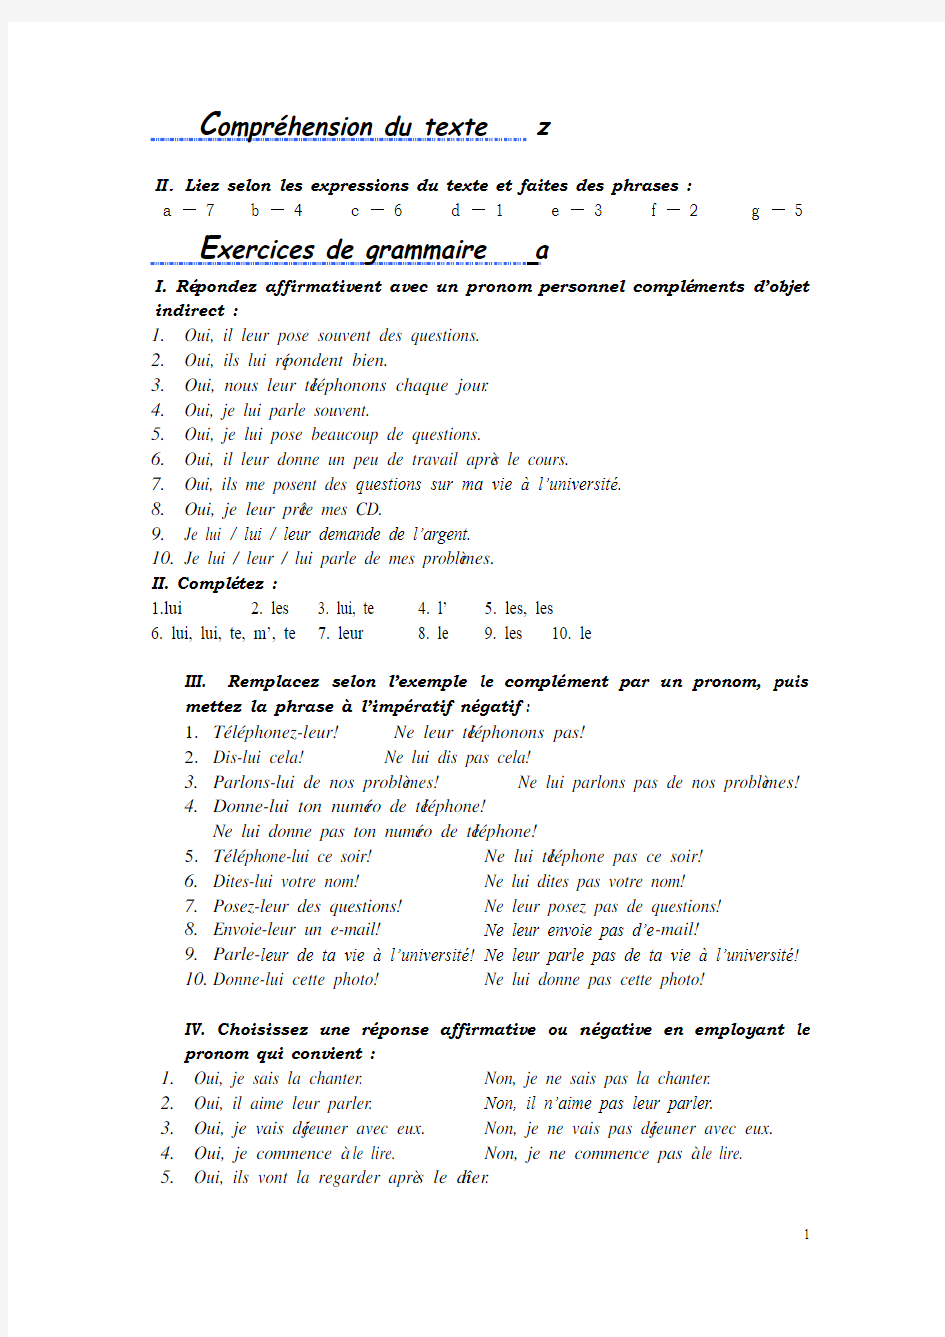 法语综合教程 1 lecon13答案